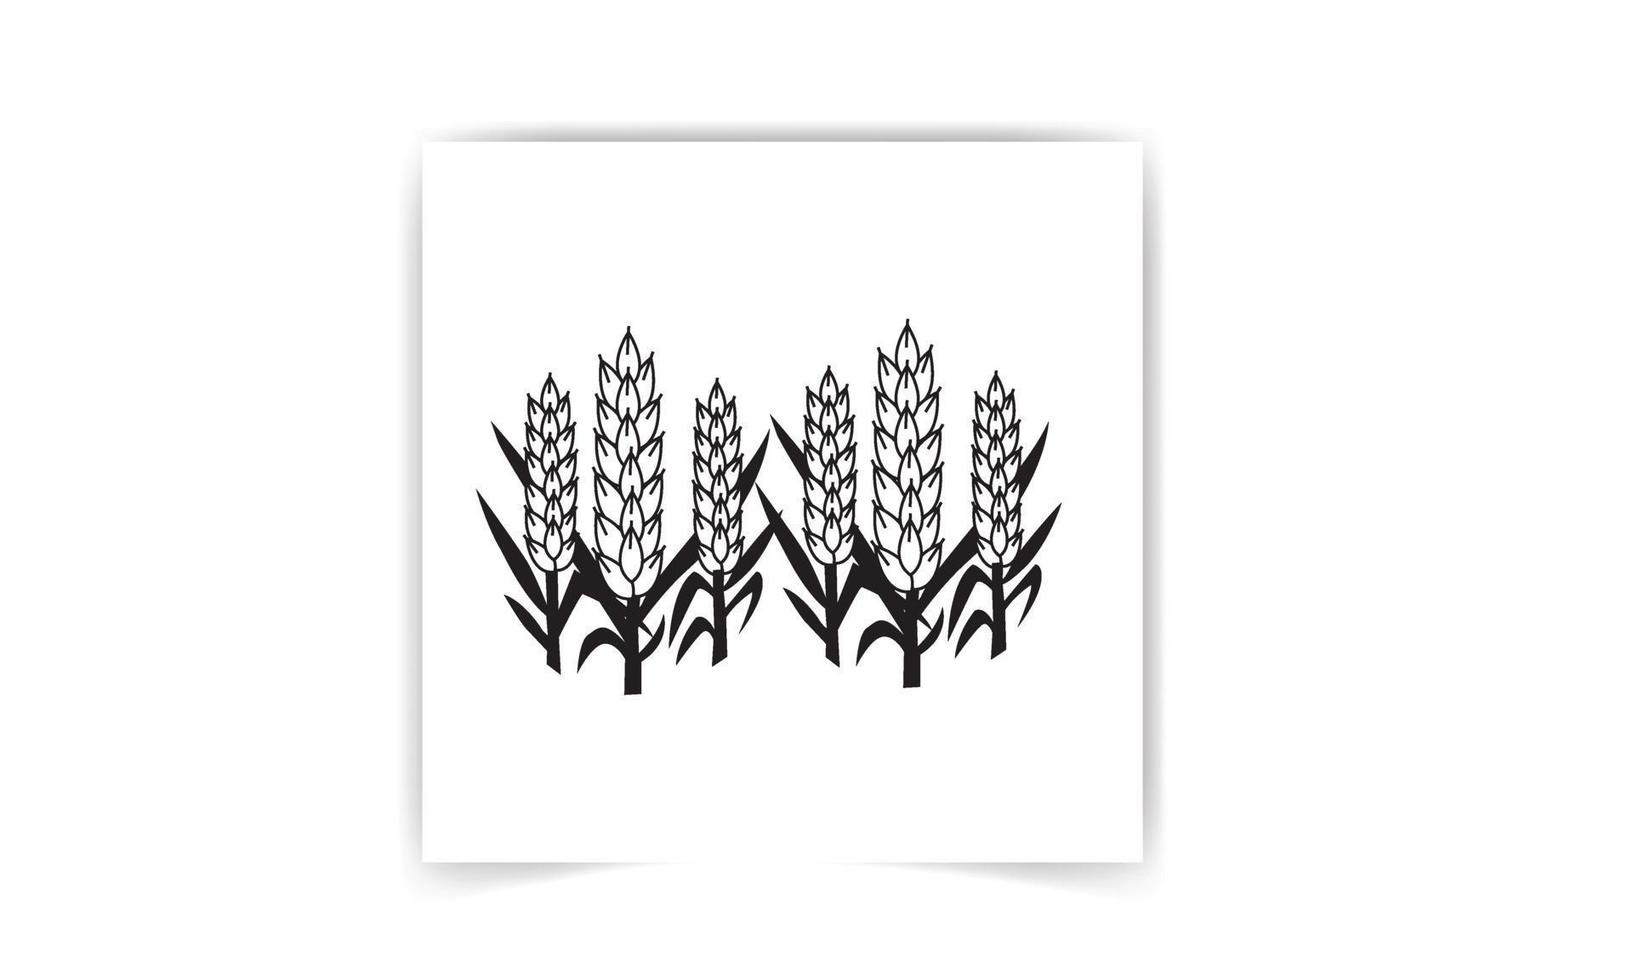 arroz oryza sativa, arroz asiático. conjunto de ilustraciones vectoriales de panículas de arroz aisladas en fondo blanco y negro vector